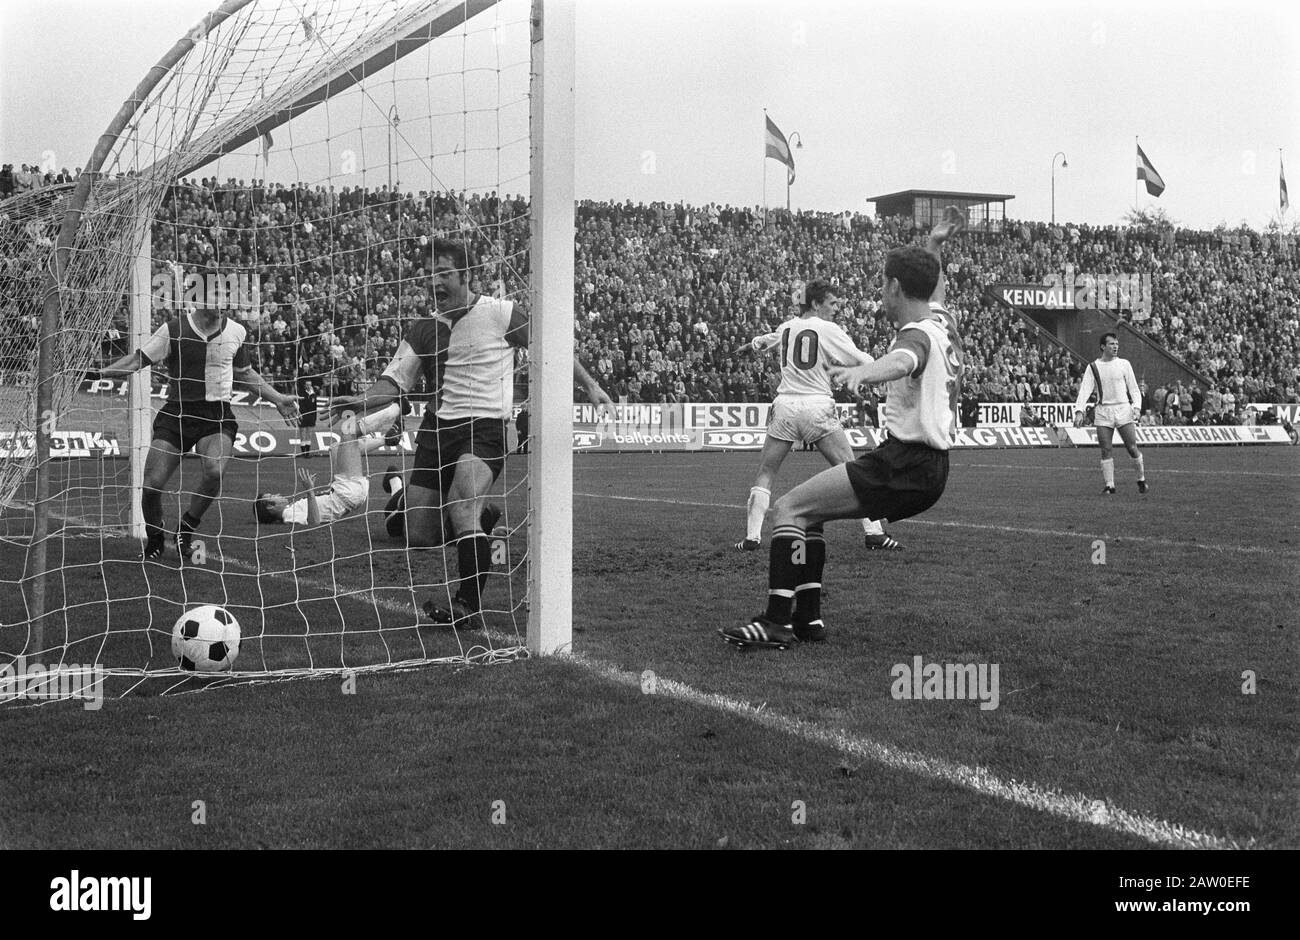 NEC v Feyenoord 0-2. Date: October 26, 1969 Keywords: sport, football Institution Name: Feyenoord Stock Photo